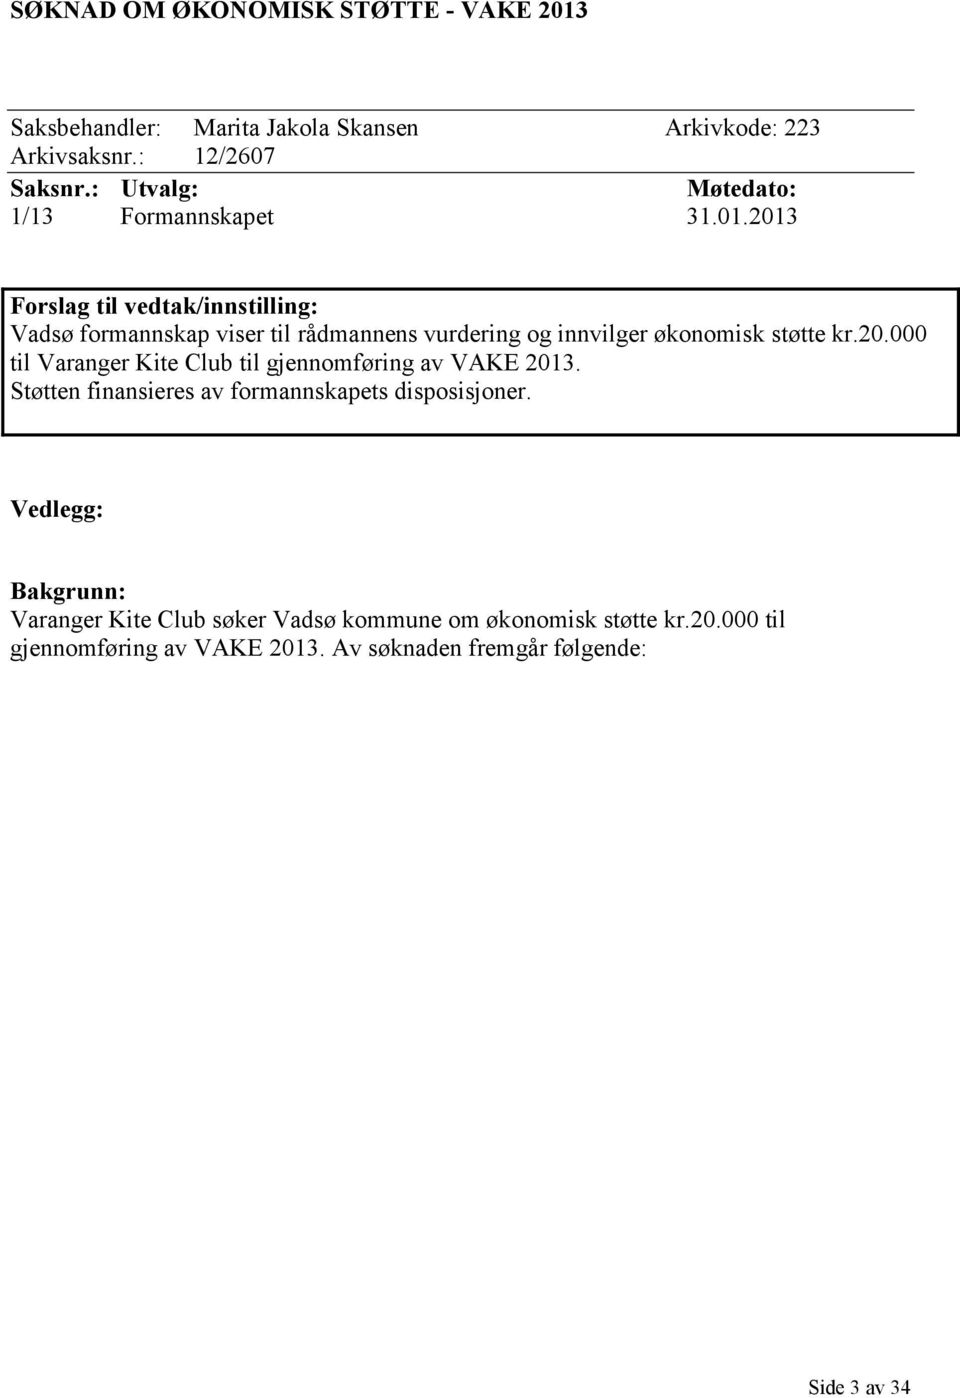 2013 Forslag til vedtak/innstilling: Vadsø formannskap viser til rådmannens vurdering og innvilger økonomisk støtte kr.20.000 til Varanger Kite Club til gjennomføring av VAKE 2013.